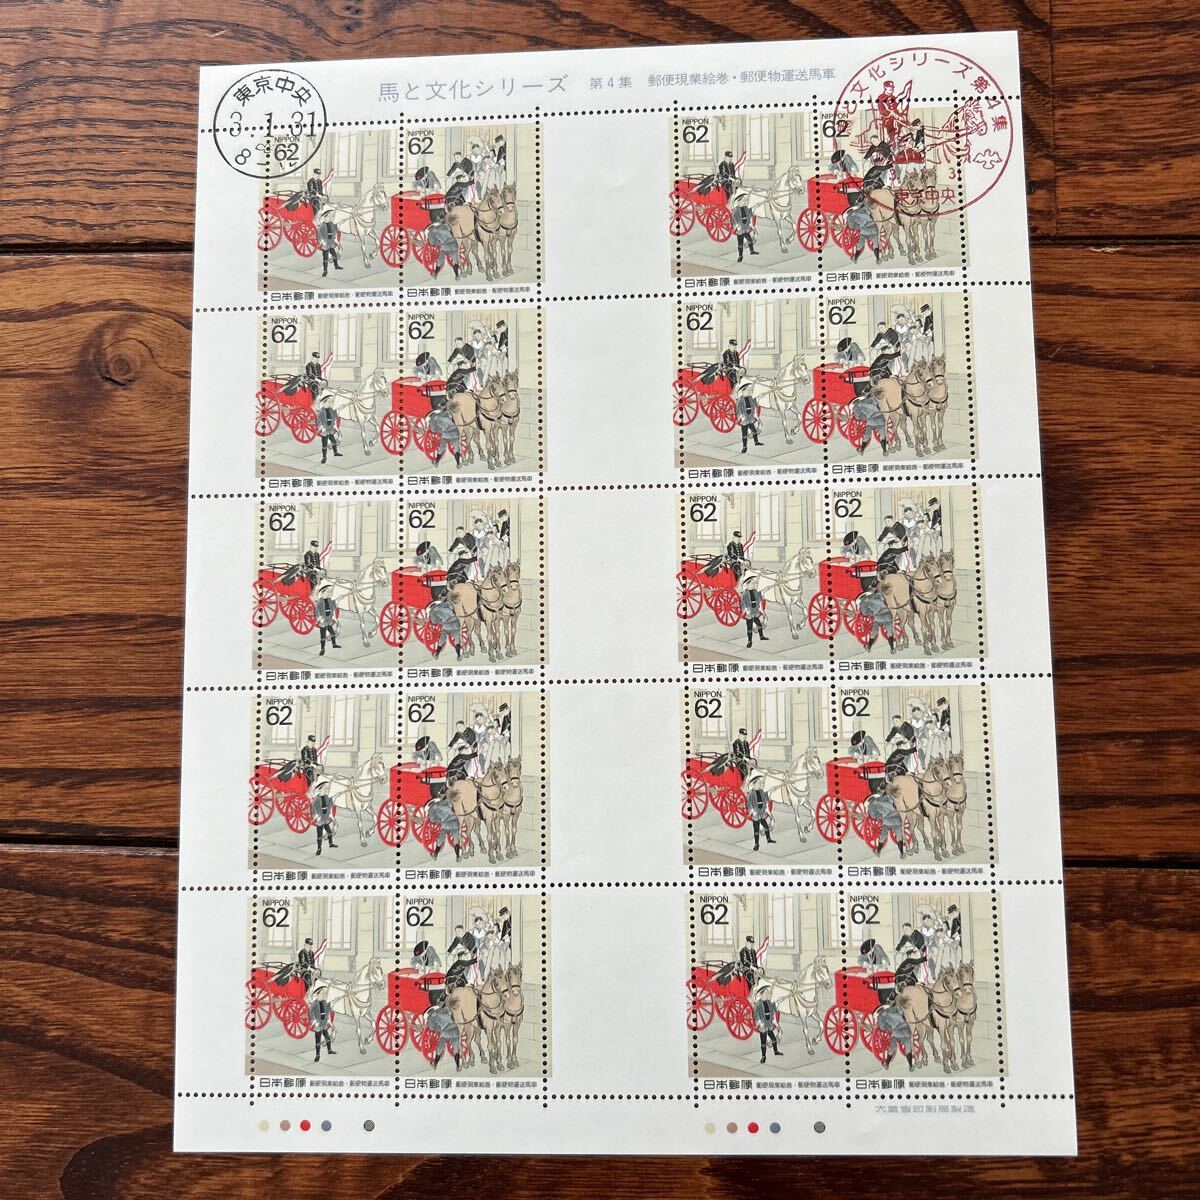 初日印記念スタンプ付き 切手シート 馬と文化シリーズ 第4集 郵便現業絵巻 郵便物運送馬車の画像1